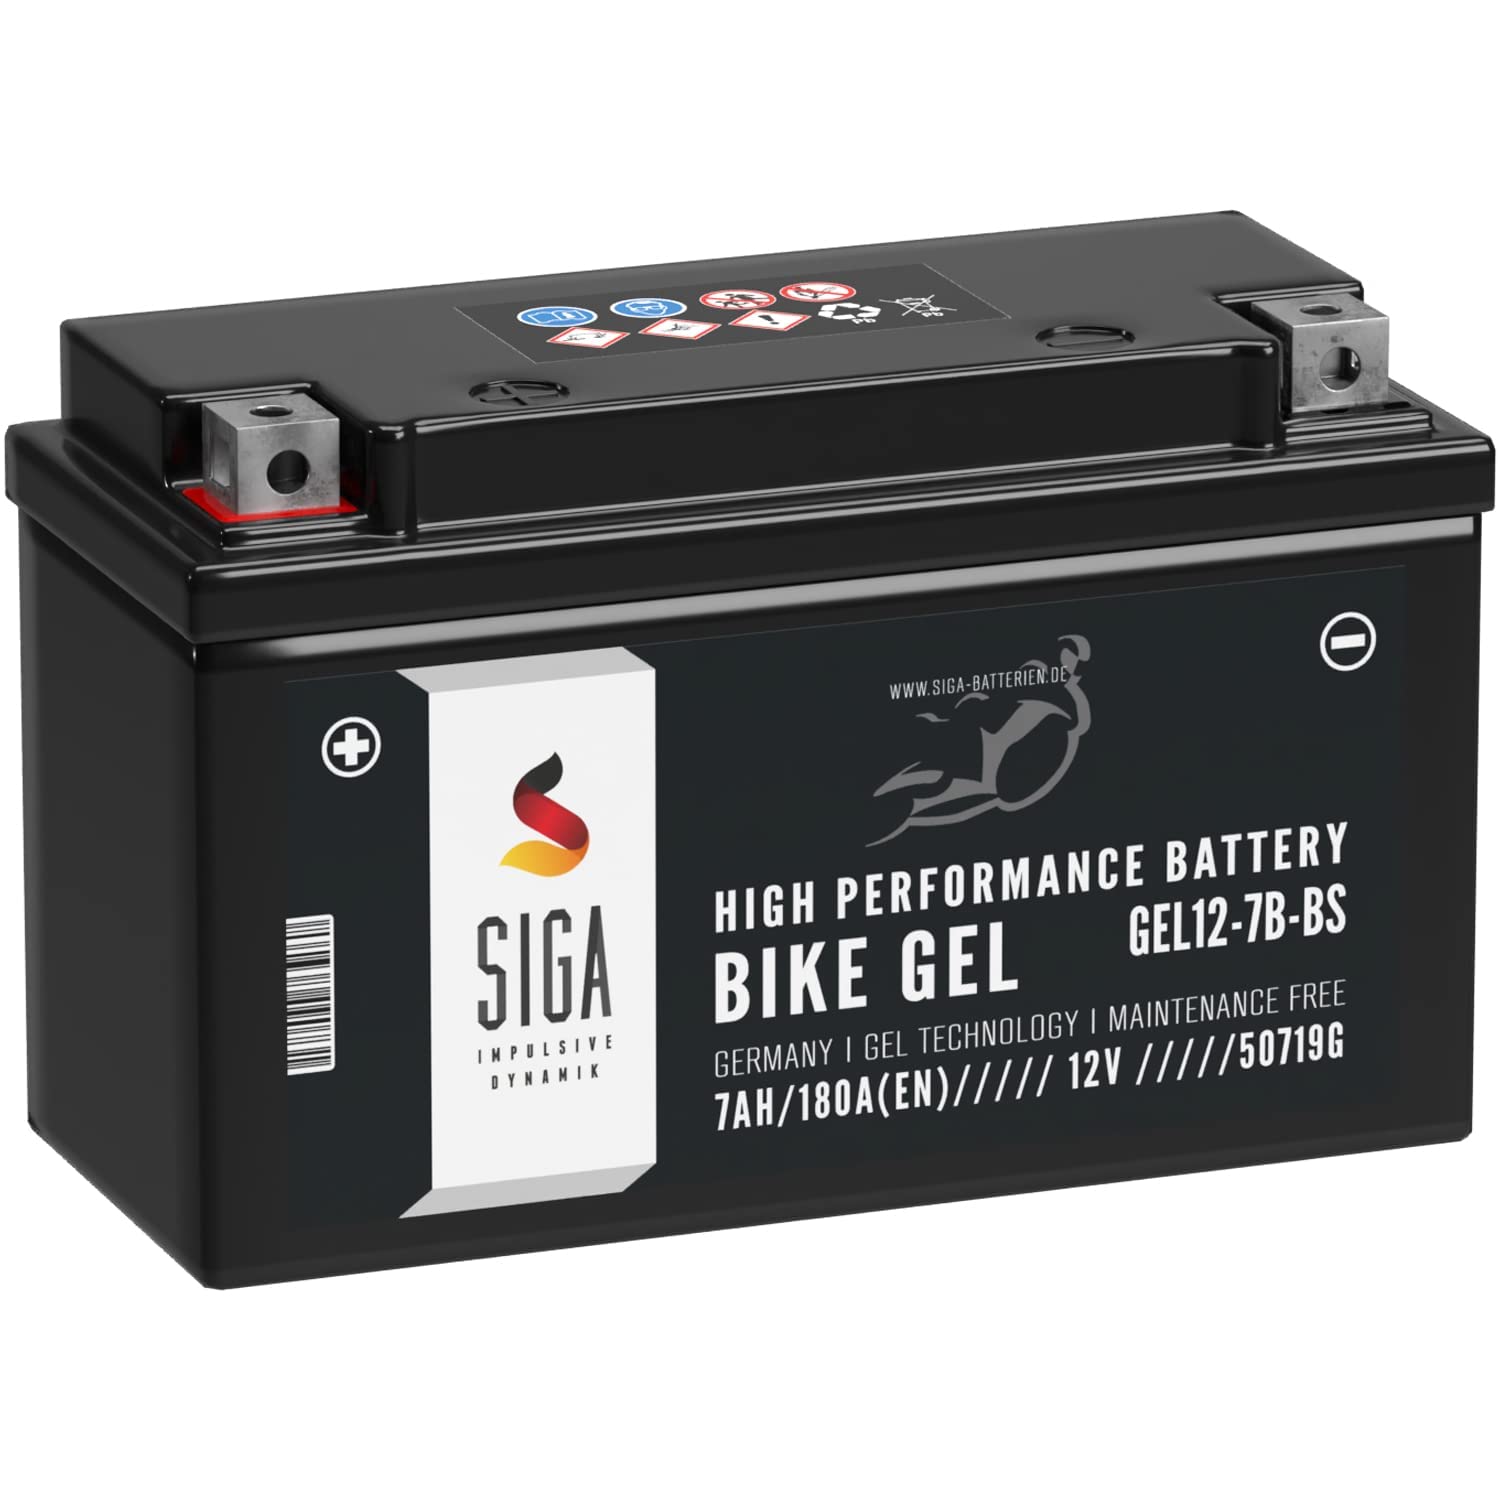 SIGA YT7B-BS Motorradbatterie GEL 7Ah 12V 180A/EN GEL12-7B-BS entspricht 50719 YT7B-4 GT7B-4 CT7B4 FT7B4 EB7B-BS 507 901 012 auslaufsicher von SIGA IMPULSIVE DYNAMIK